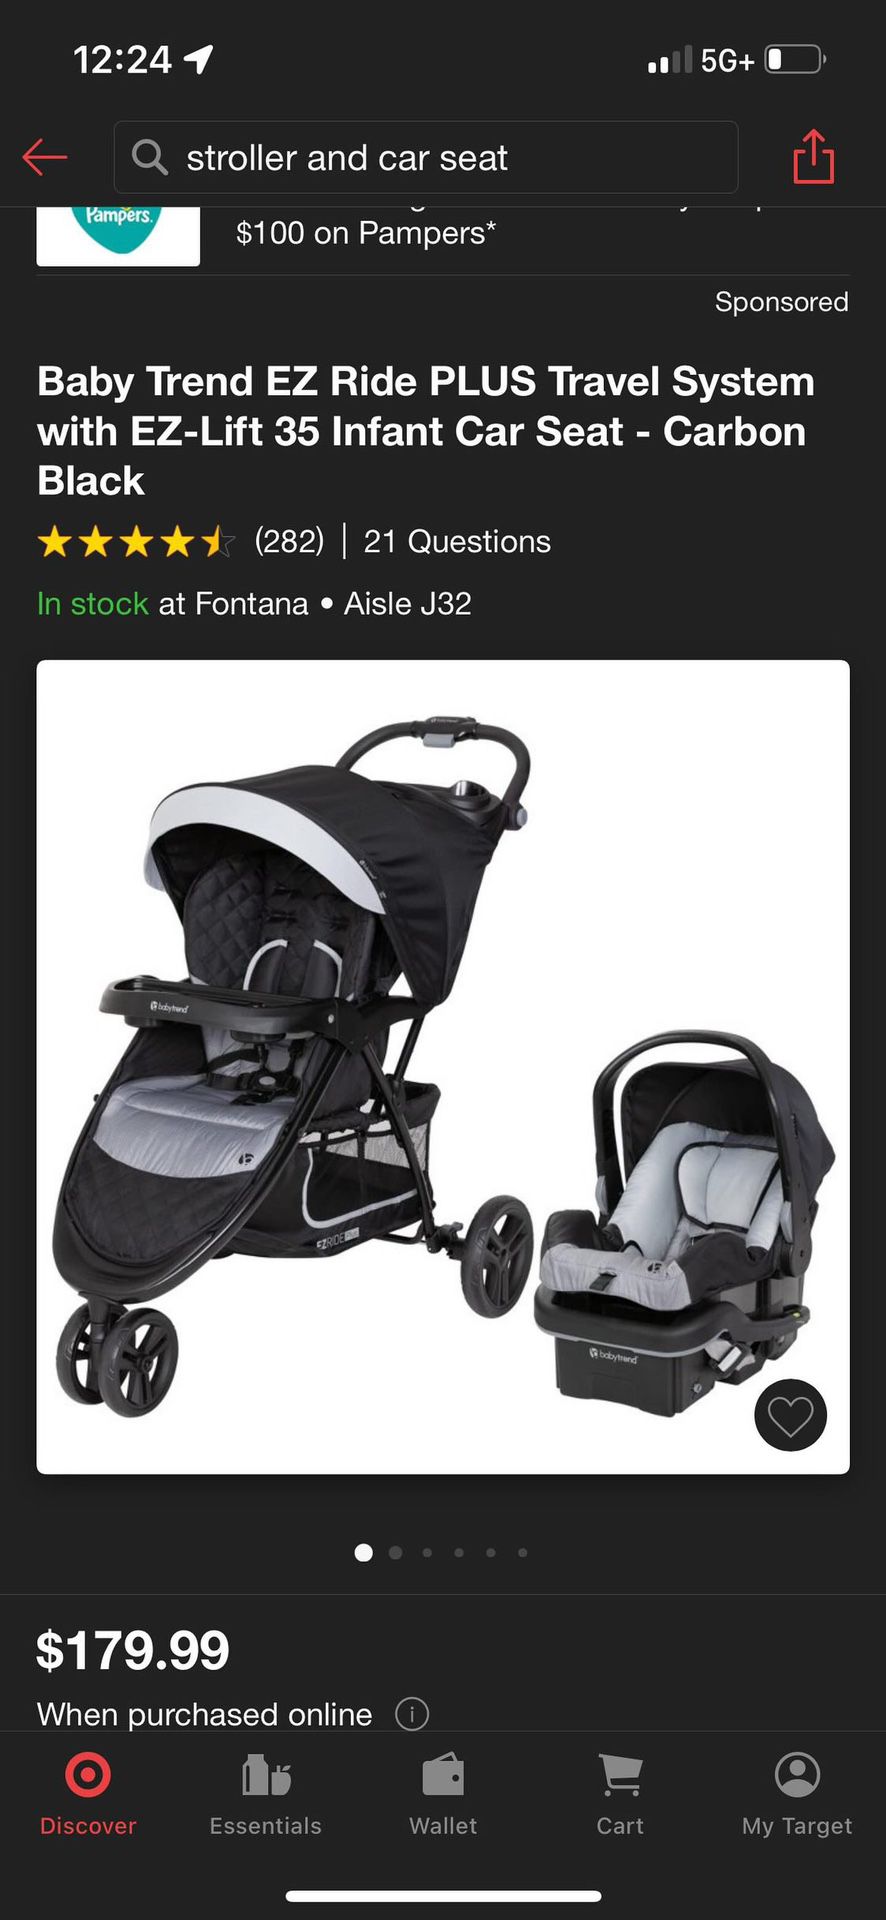 Baby Trend EZ Ride PLUS Travel System with EZ-Lift 35 Infant Car Seat - Carbon Black